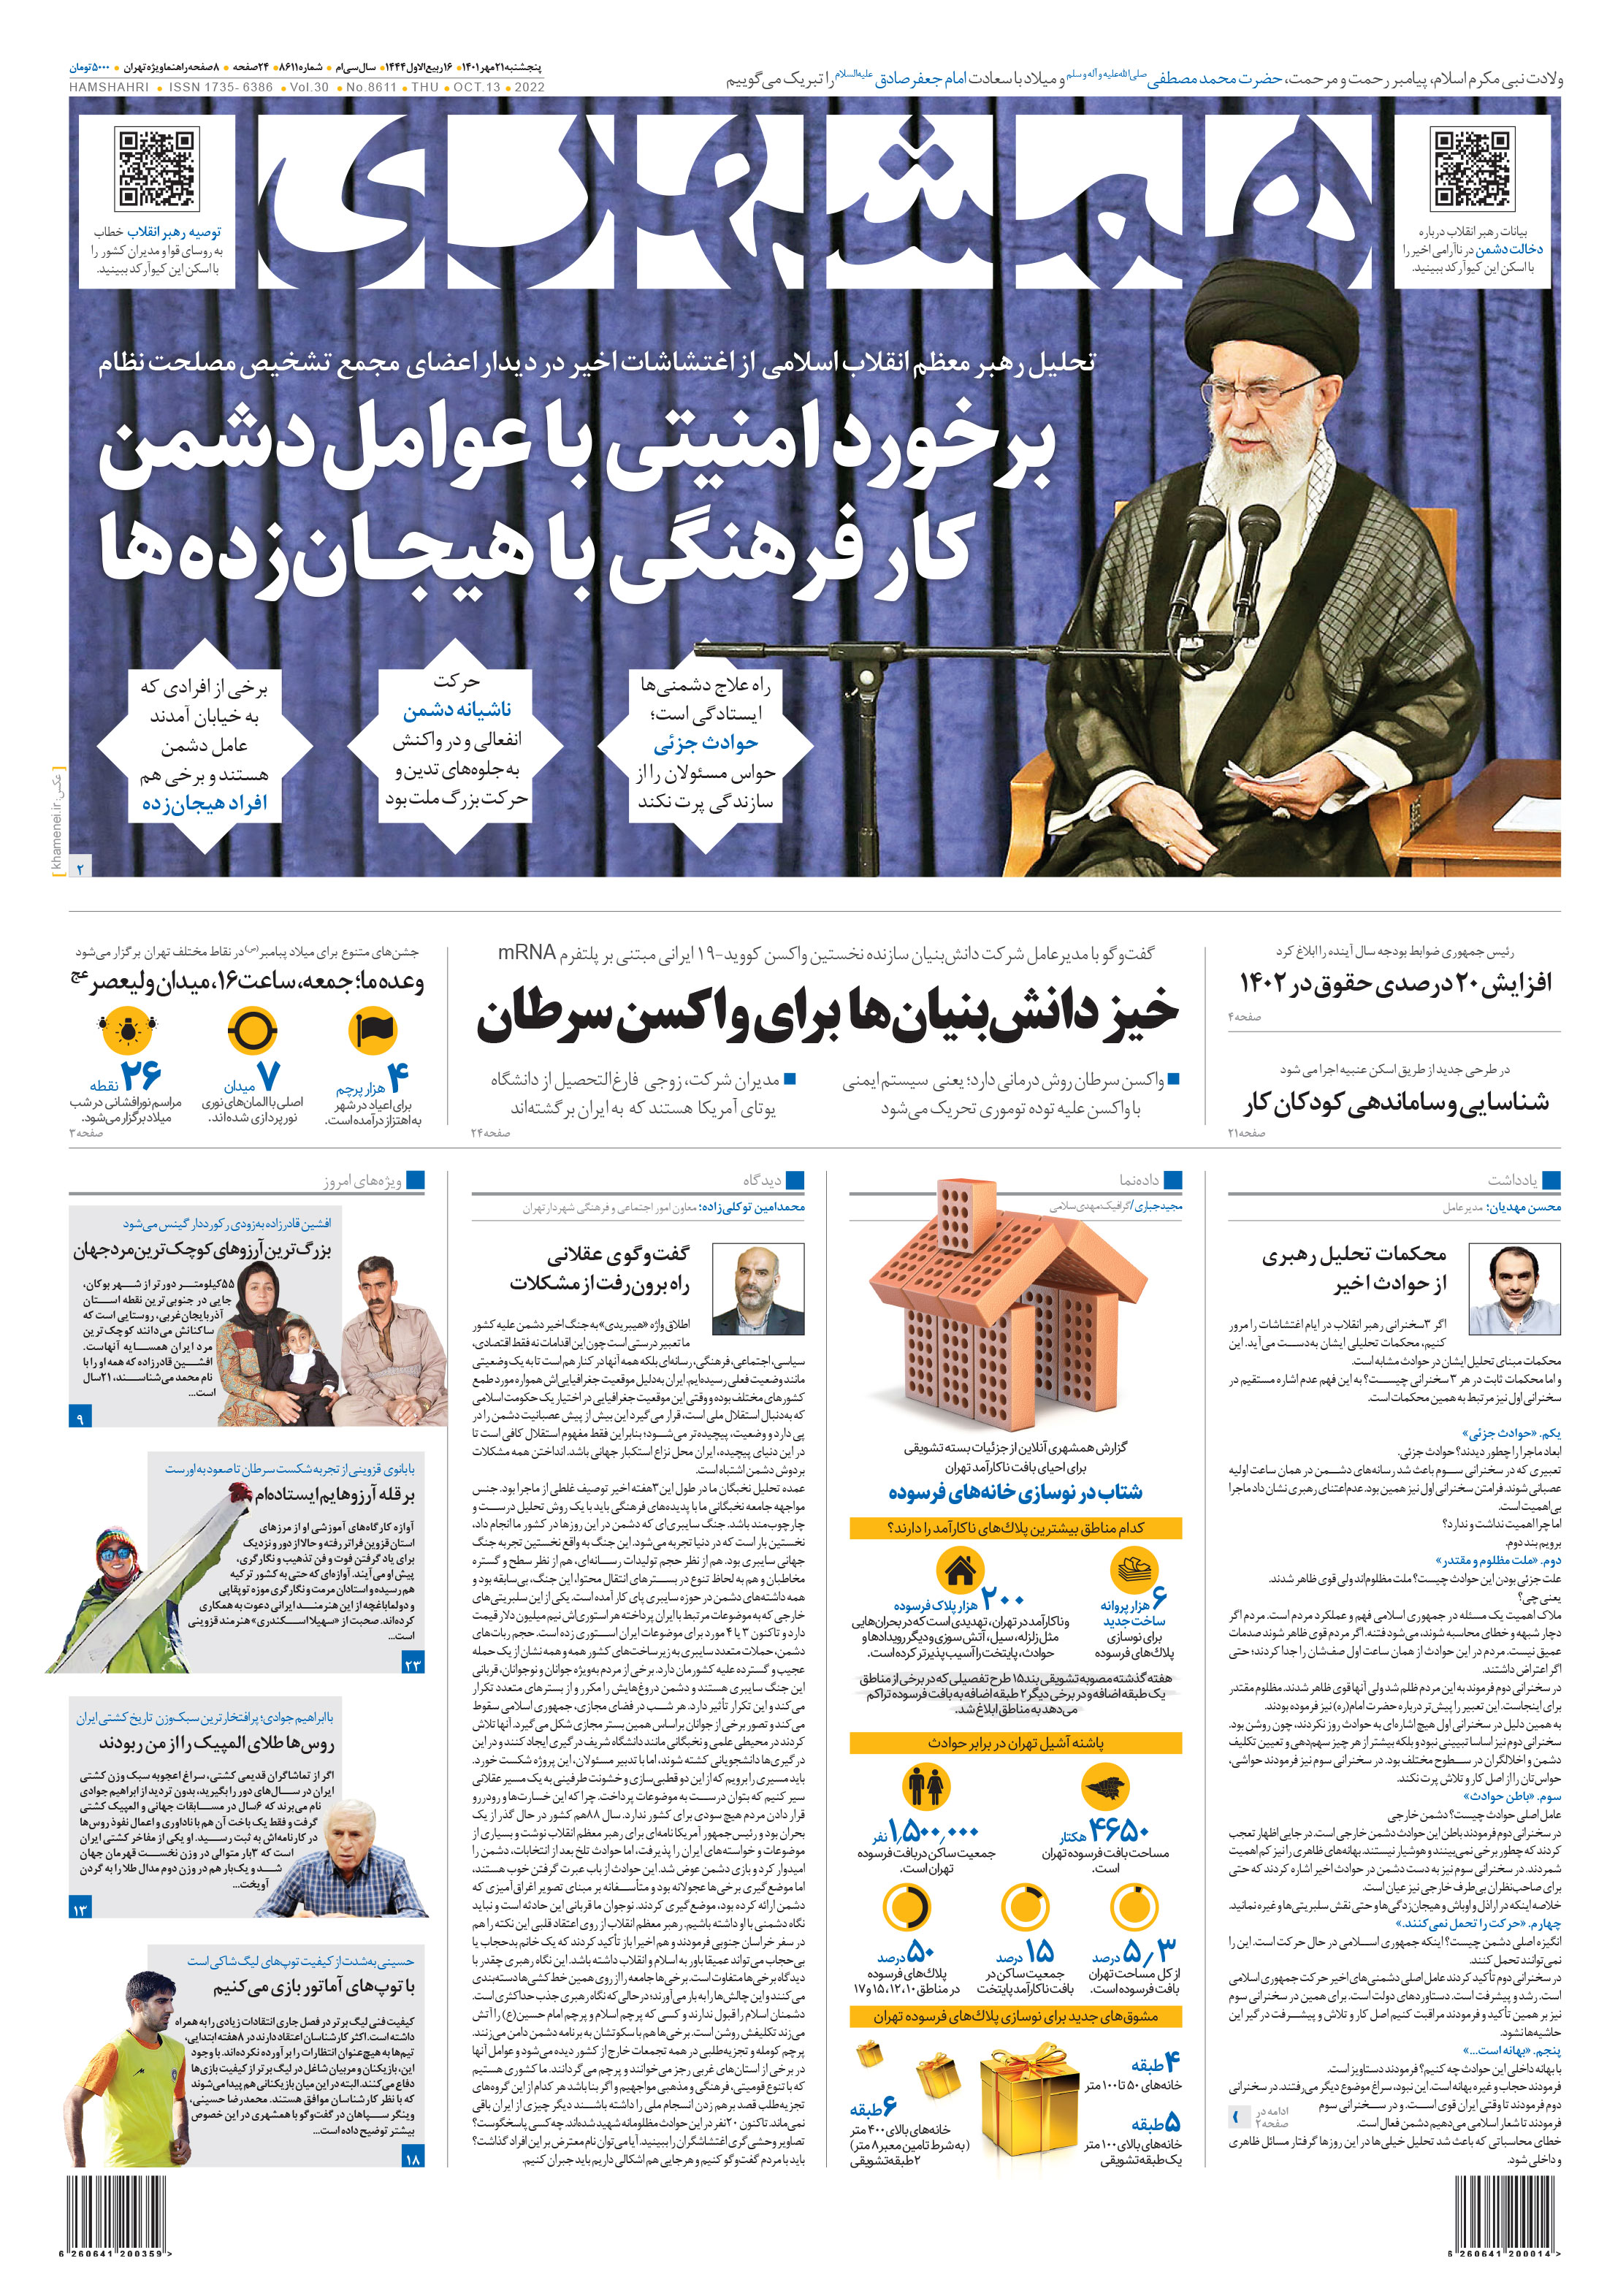 صفحه اول پنجشنبه 21 مهر 1401 